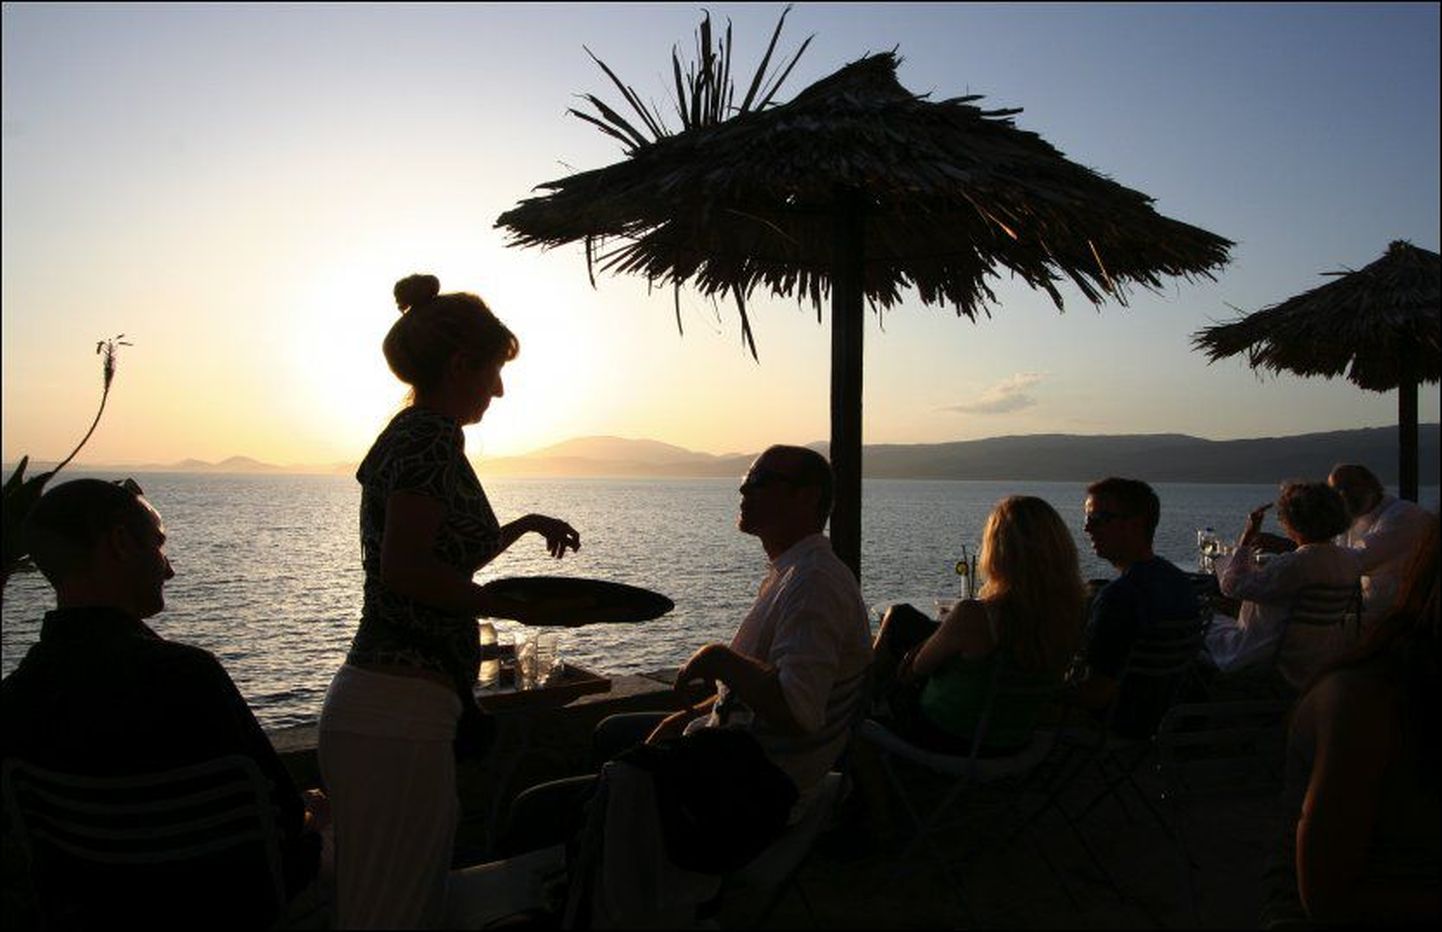 Kreekas Hydra saarel asuvas restoranis saab rahuliku muusika saatel nautida päikeseloojangut ja kui veab, piiluda ka kõrvallauas istuvaid kuulsusi.